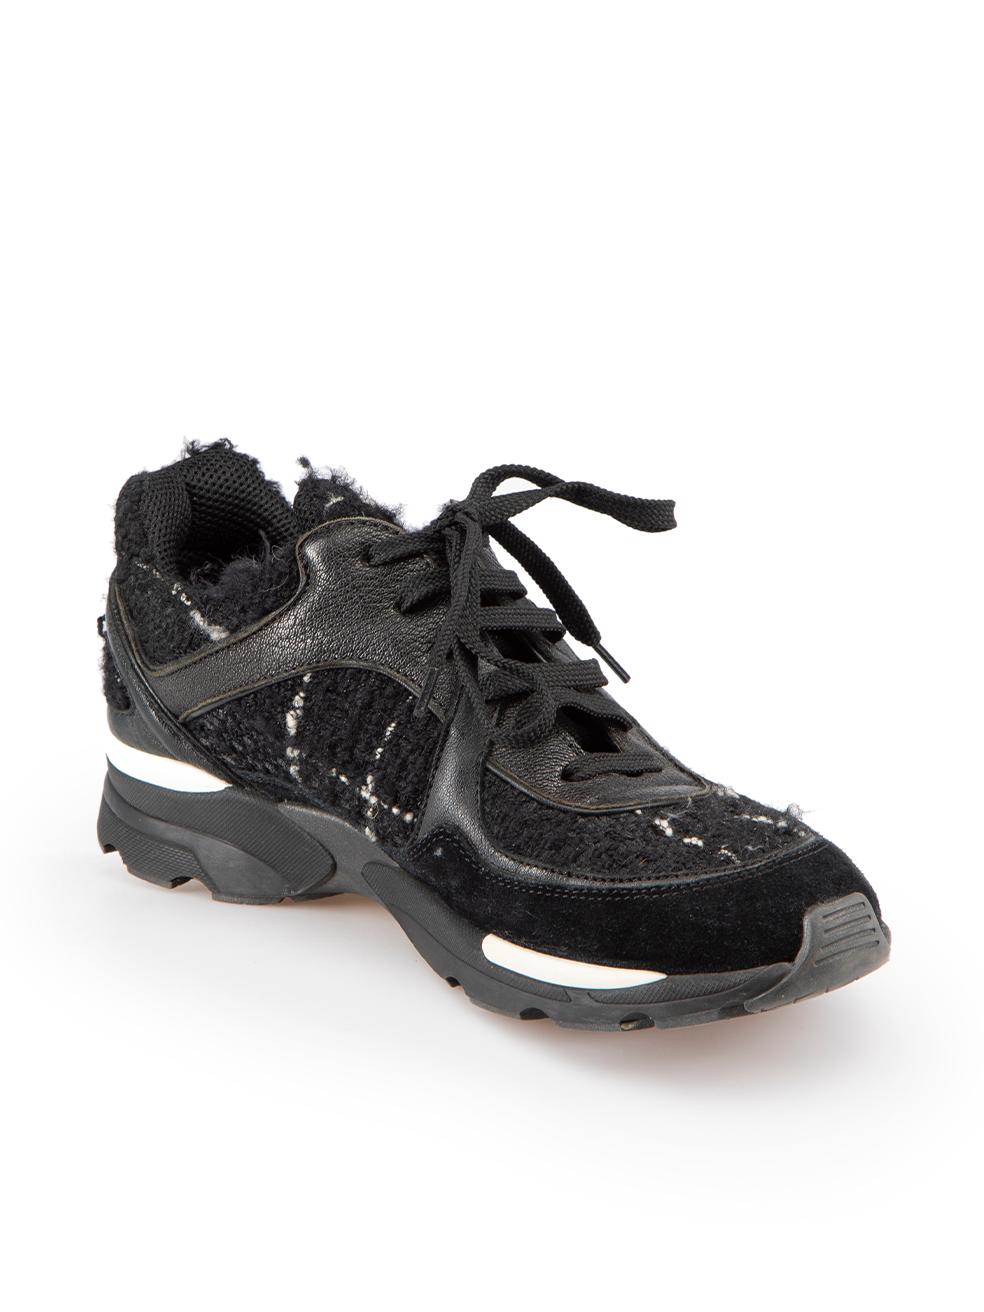 CONDIT ist sehr gut. Die Schuhe weisen minimale Abnutzungserscheinungen auf. Minimale Abnutzungserscheinungen an den Lederbesätzen und Wildlederverkleidungen mit Abschürfungen an beiden Schuhen. Die Tweed-Verkleidung hat Pilling, um die Textur auf